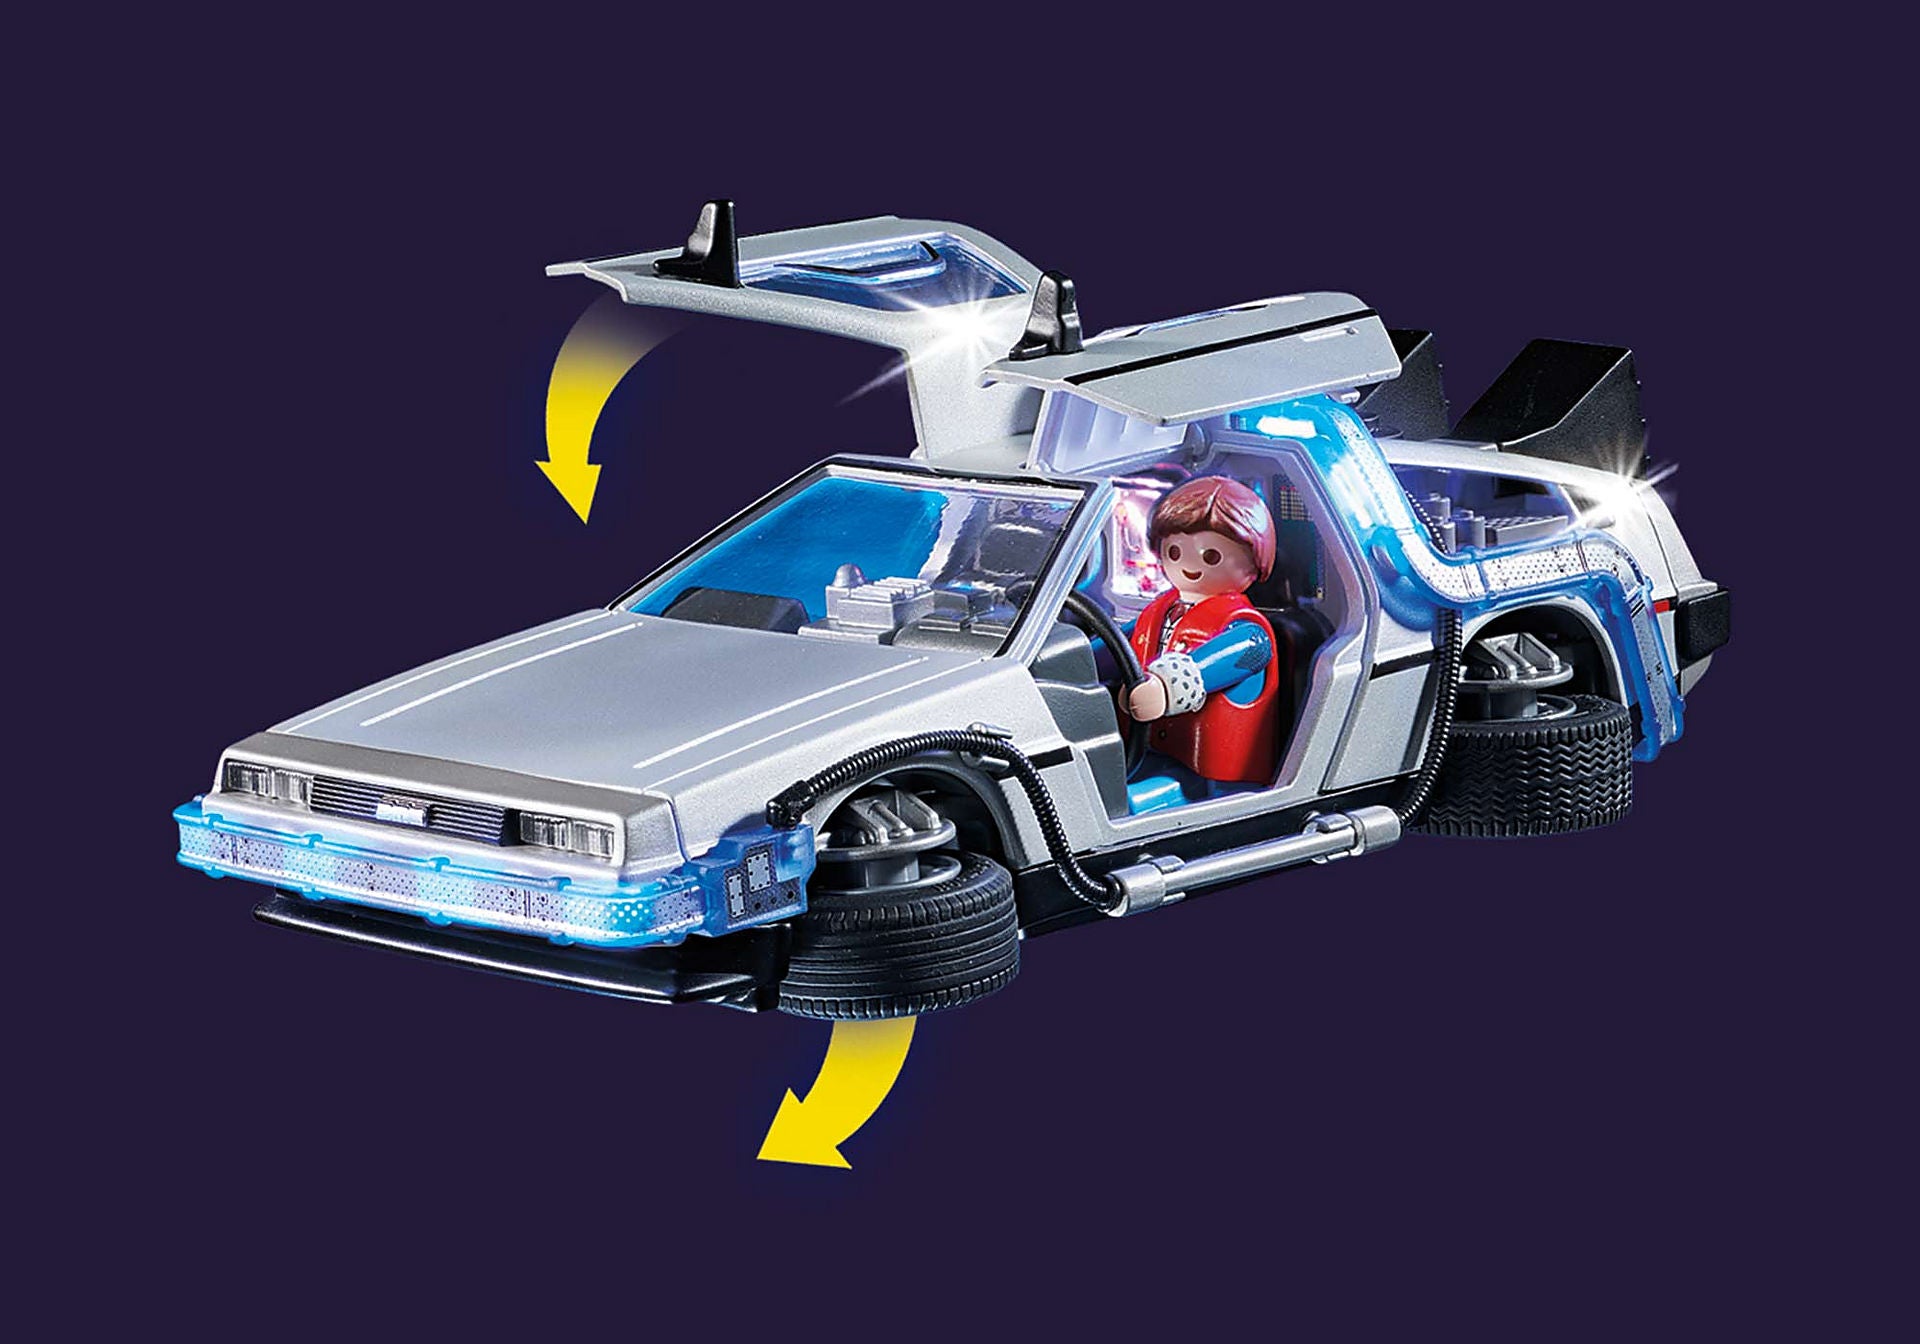 Playmobil Volver al Futuro: Volver al Futuro DeLorean 70317